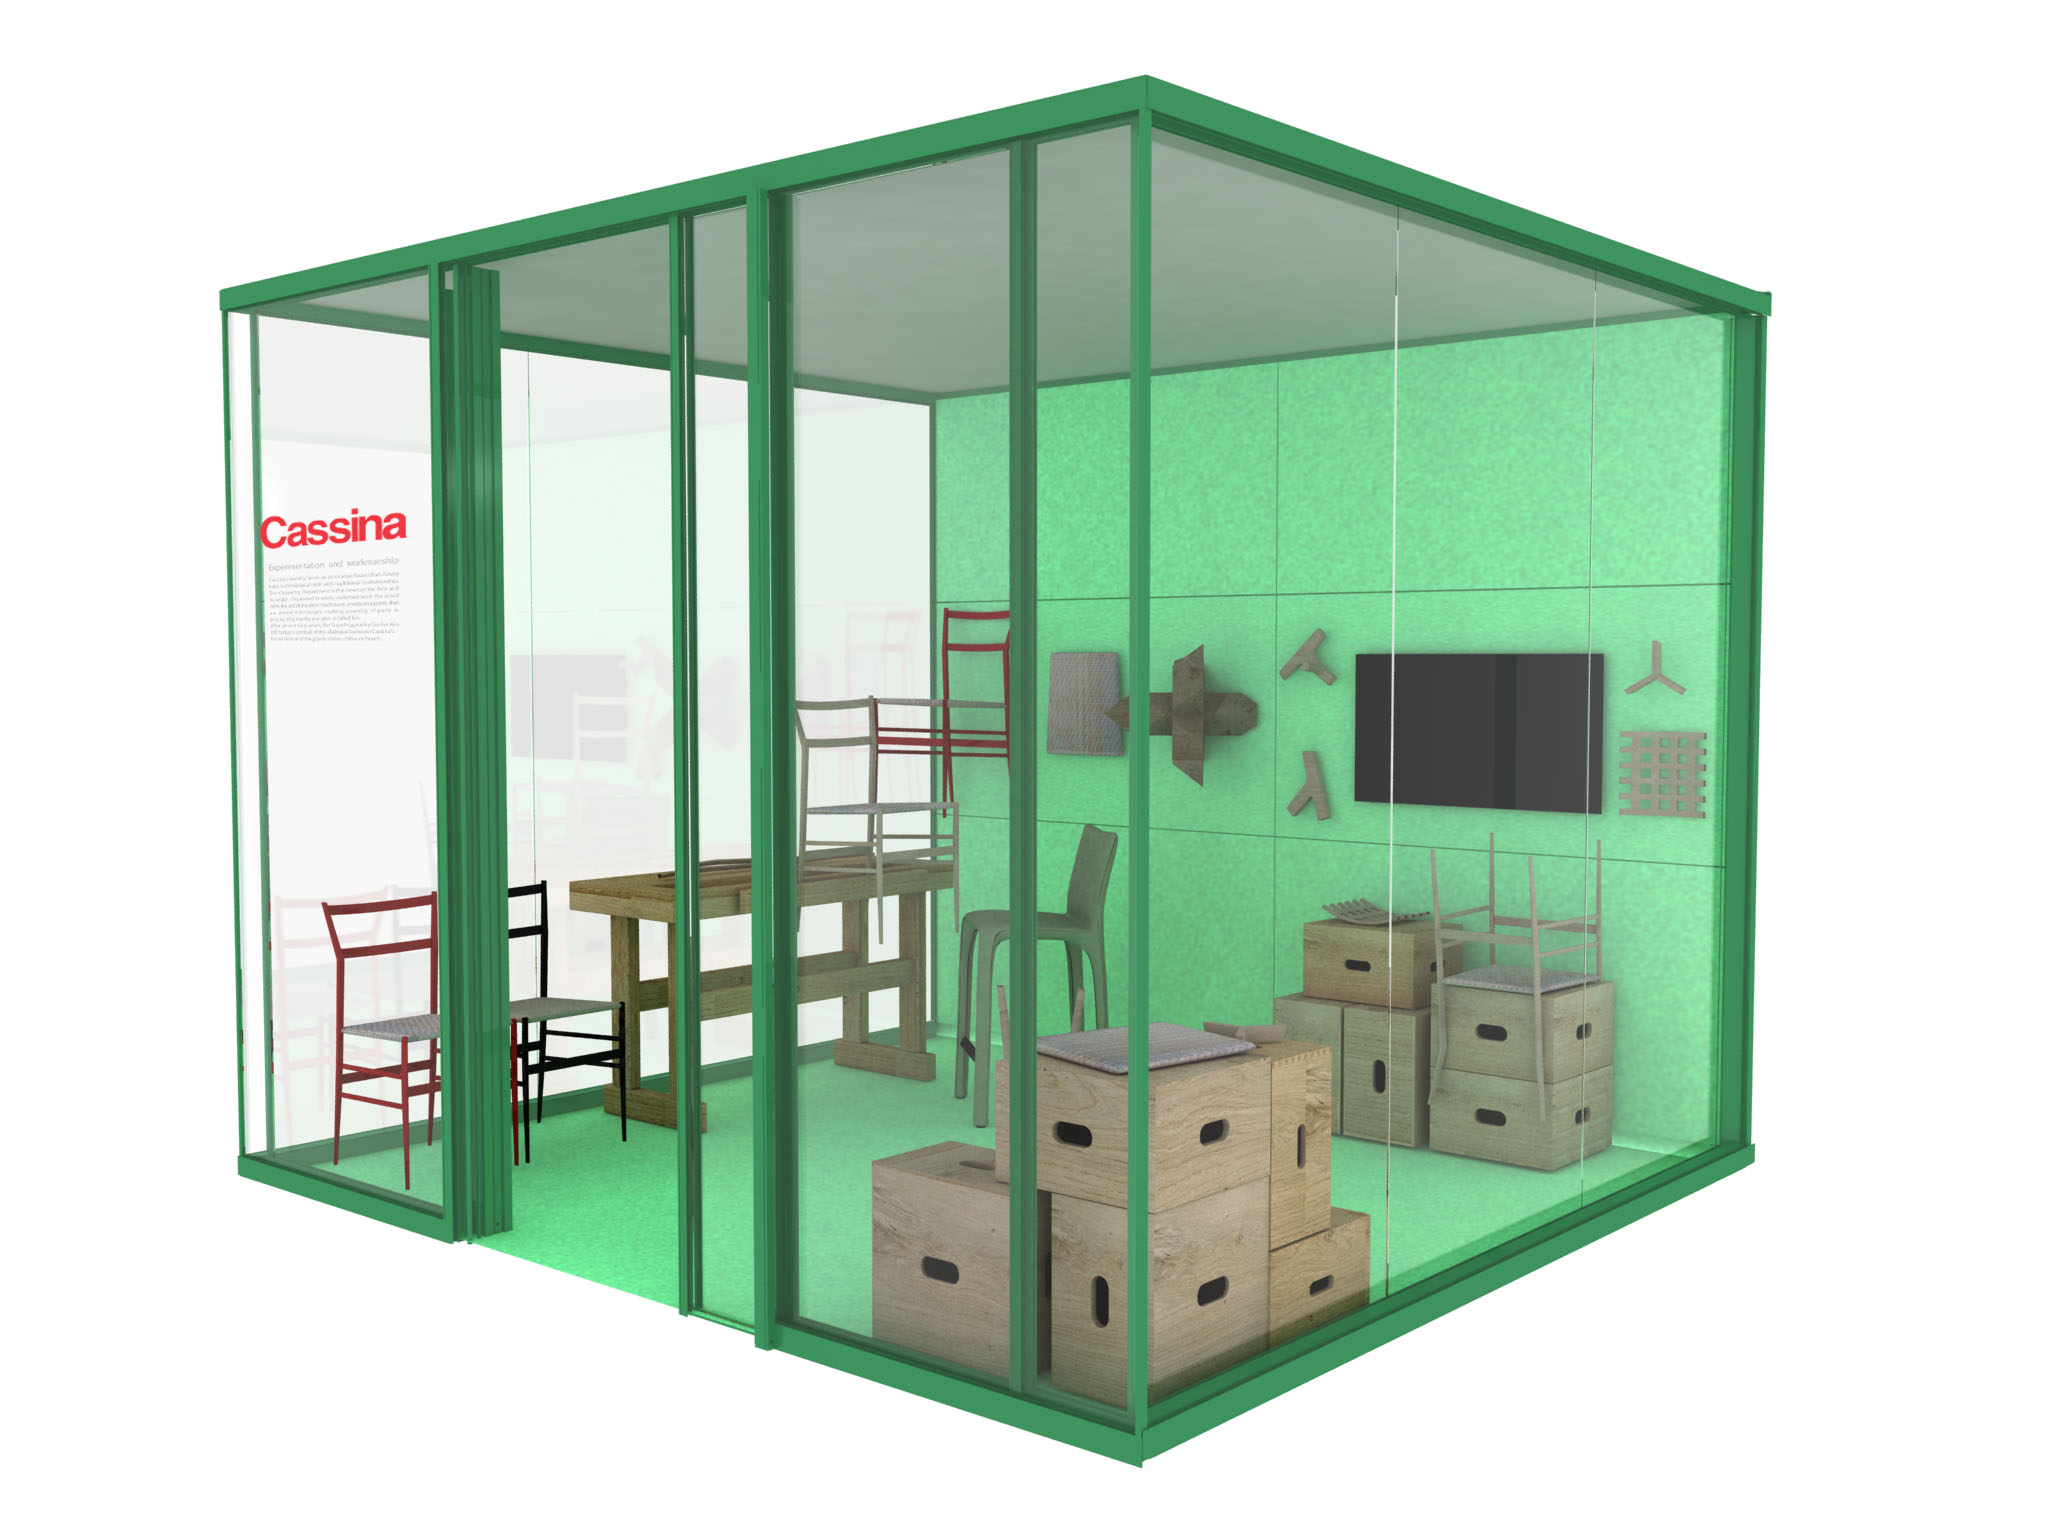 fair booth designer, booth interior designer, booth design setup, professional fair designer,